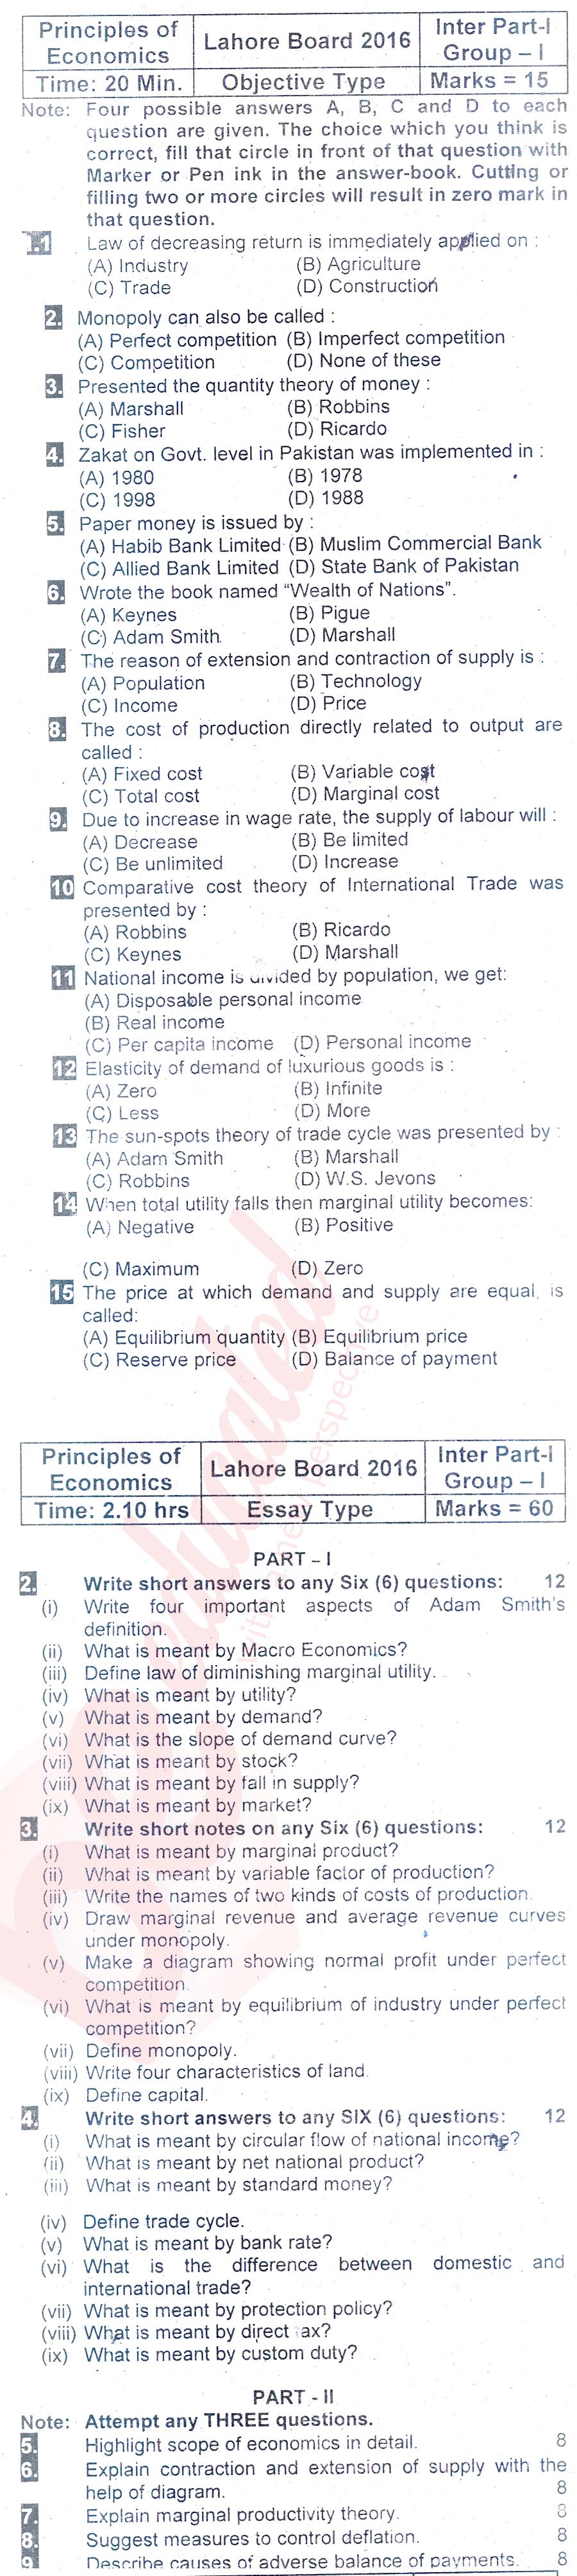 Principles of Economics ICOM Part 1 Past Paper Group 1 BISE Lahore 2016